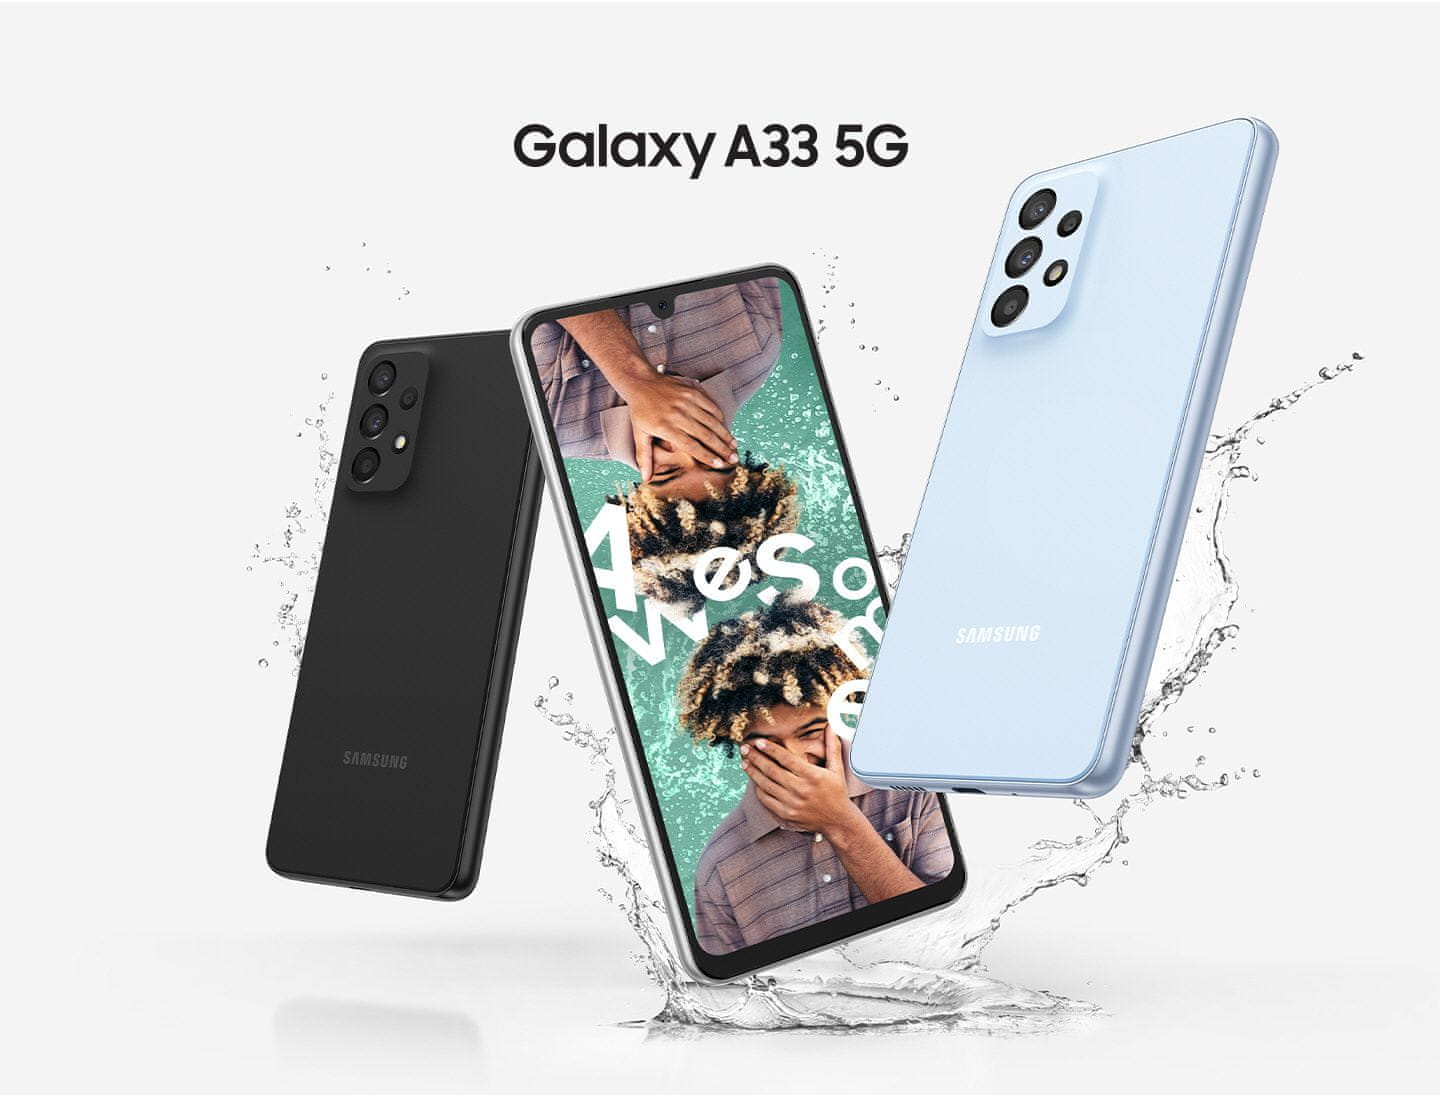 Samsung Galaxy A53 5G, chytrý telefon, vlajková loď 6,5palcový displej AMOLED obnovovací frekvence stabilizace obrazu čtyři fotoaparáty nejrychlejší 5G připojení 5G internet podpora nejrychlejšího připojení Gorilla Glass IP67 NFC